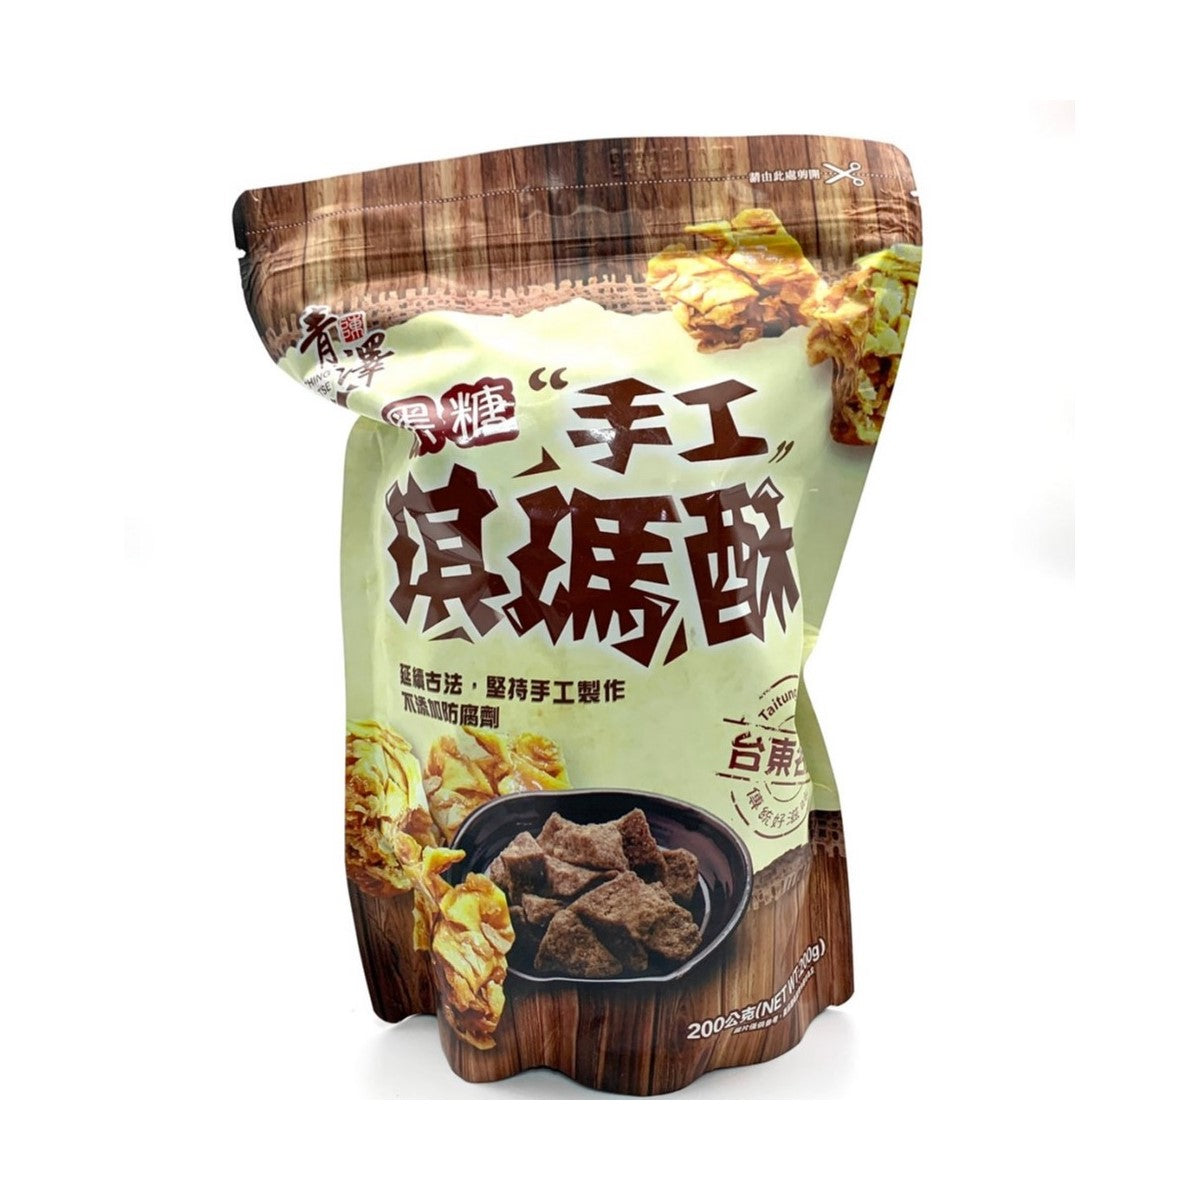 【CHING TSE】 Qi Ma Su - Brown Sugar Flavor 200g